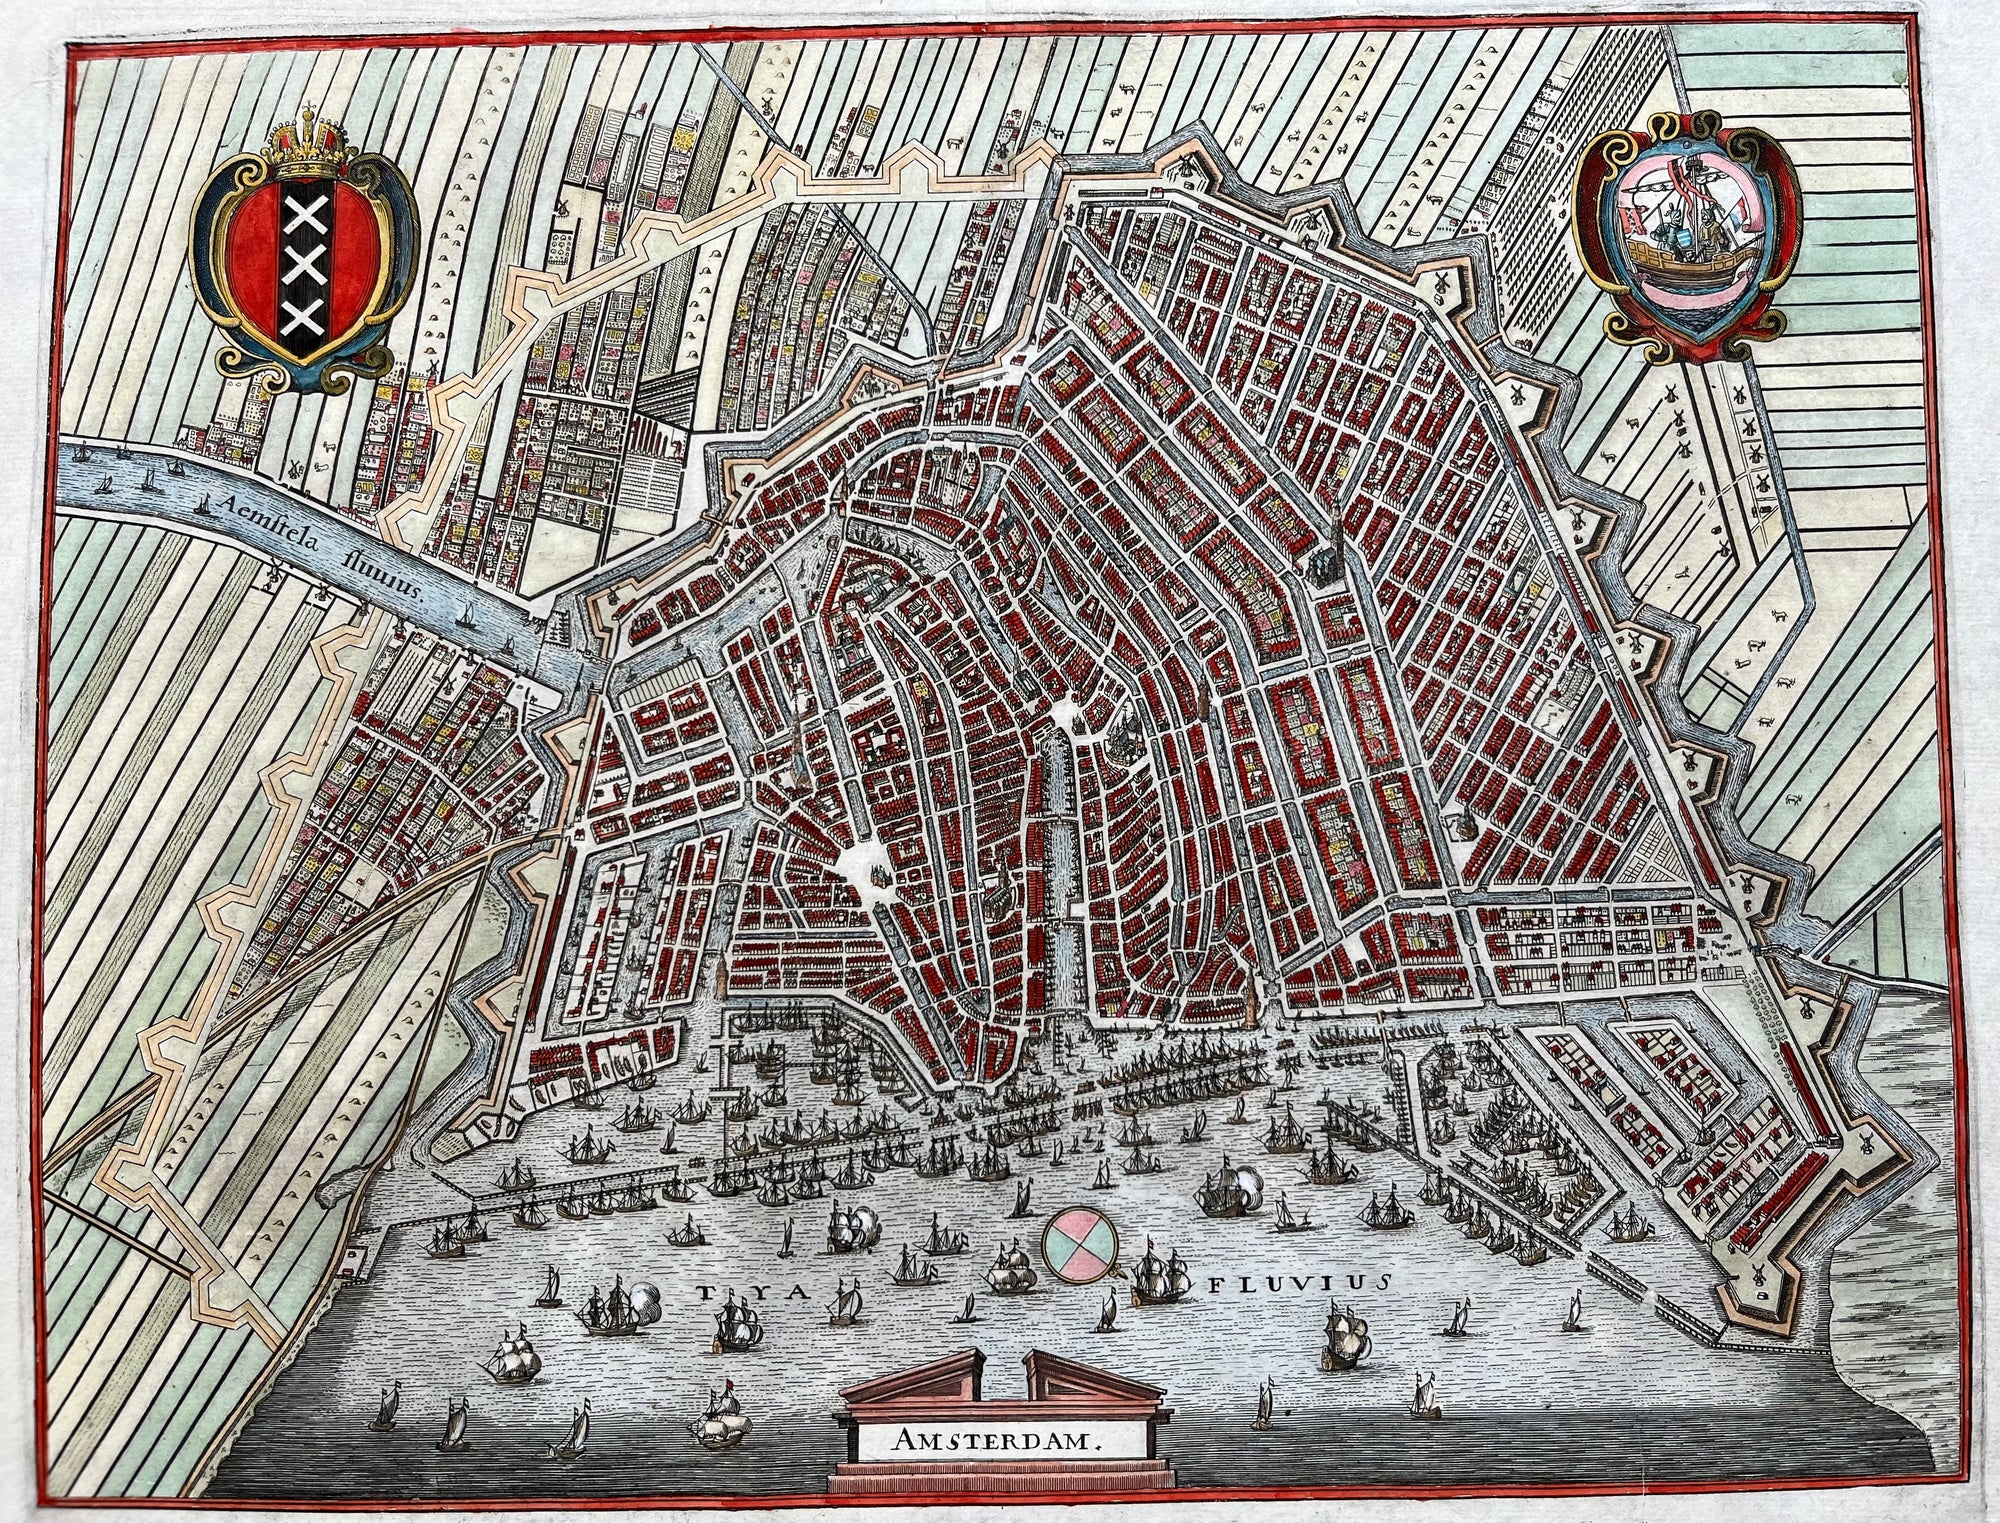 amsterdam, map of amsterdam, kaart, plan, plattegrond, old map, antique map, oude kaart, holland, nederland, dutch, maps, townplan, engraving, merian, Gottfried, gravure